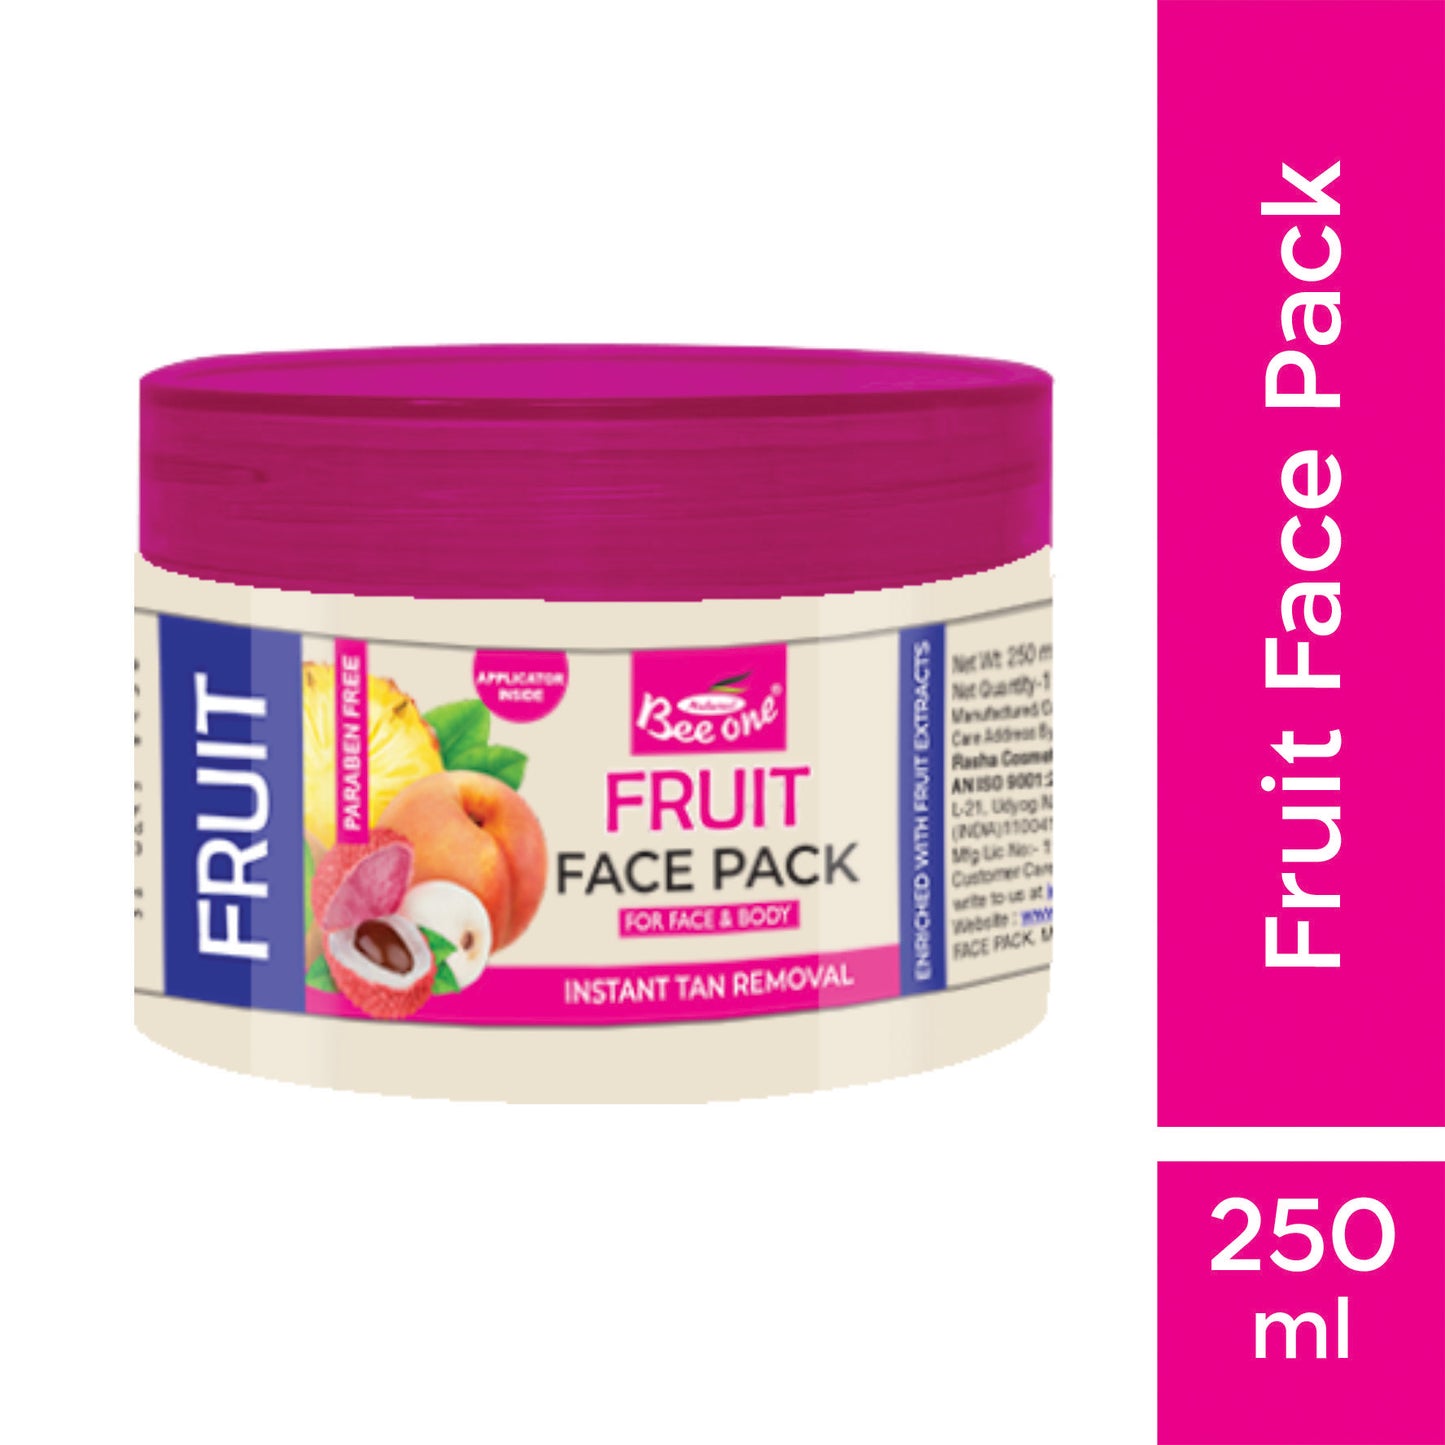 FRUIT FACE PACK 250ML